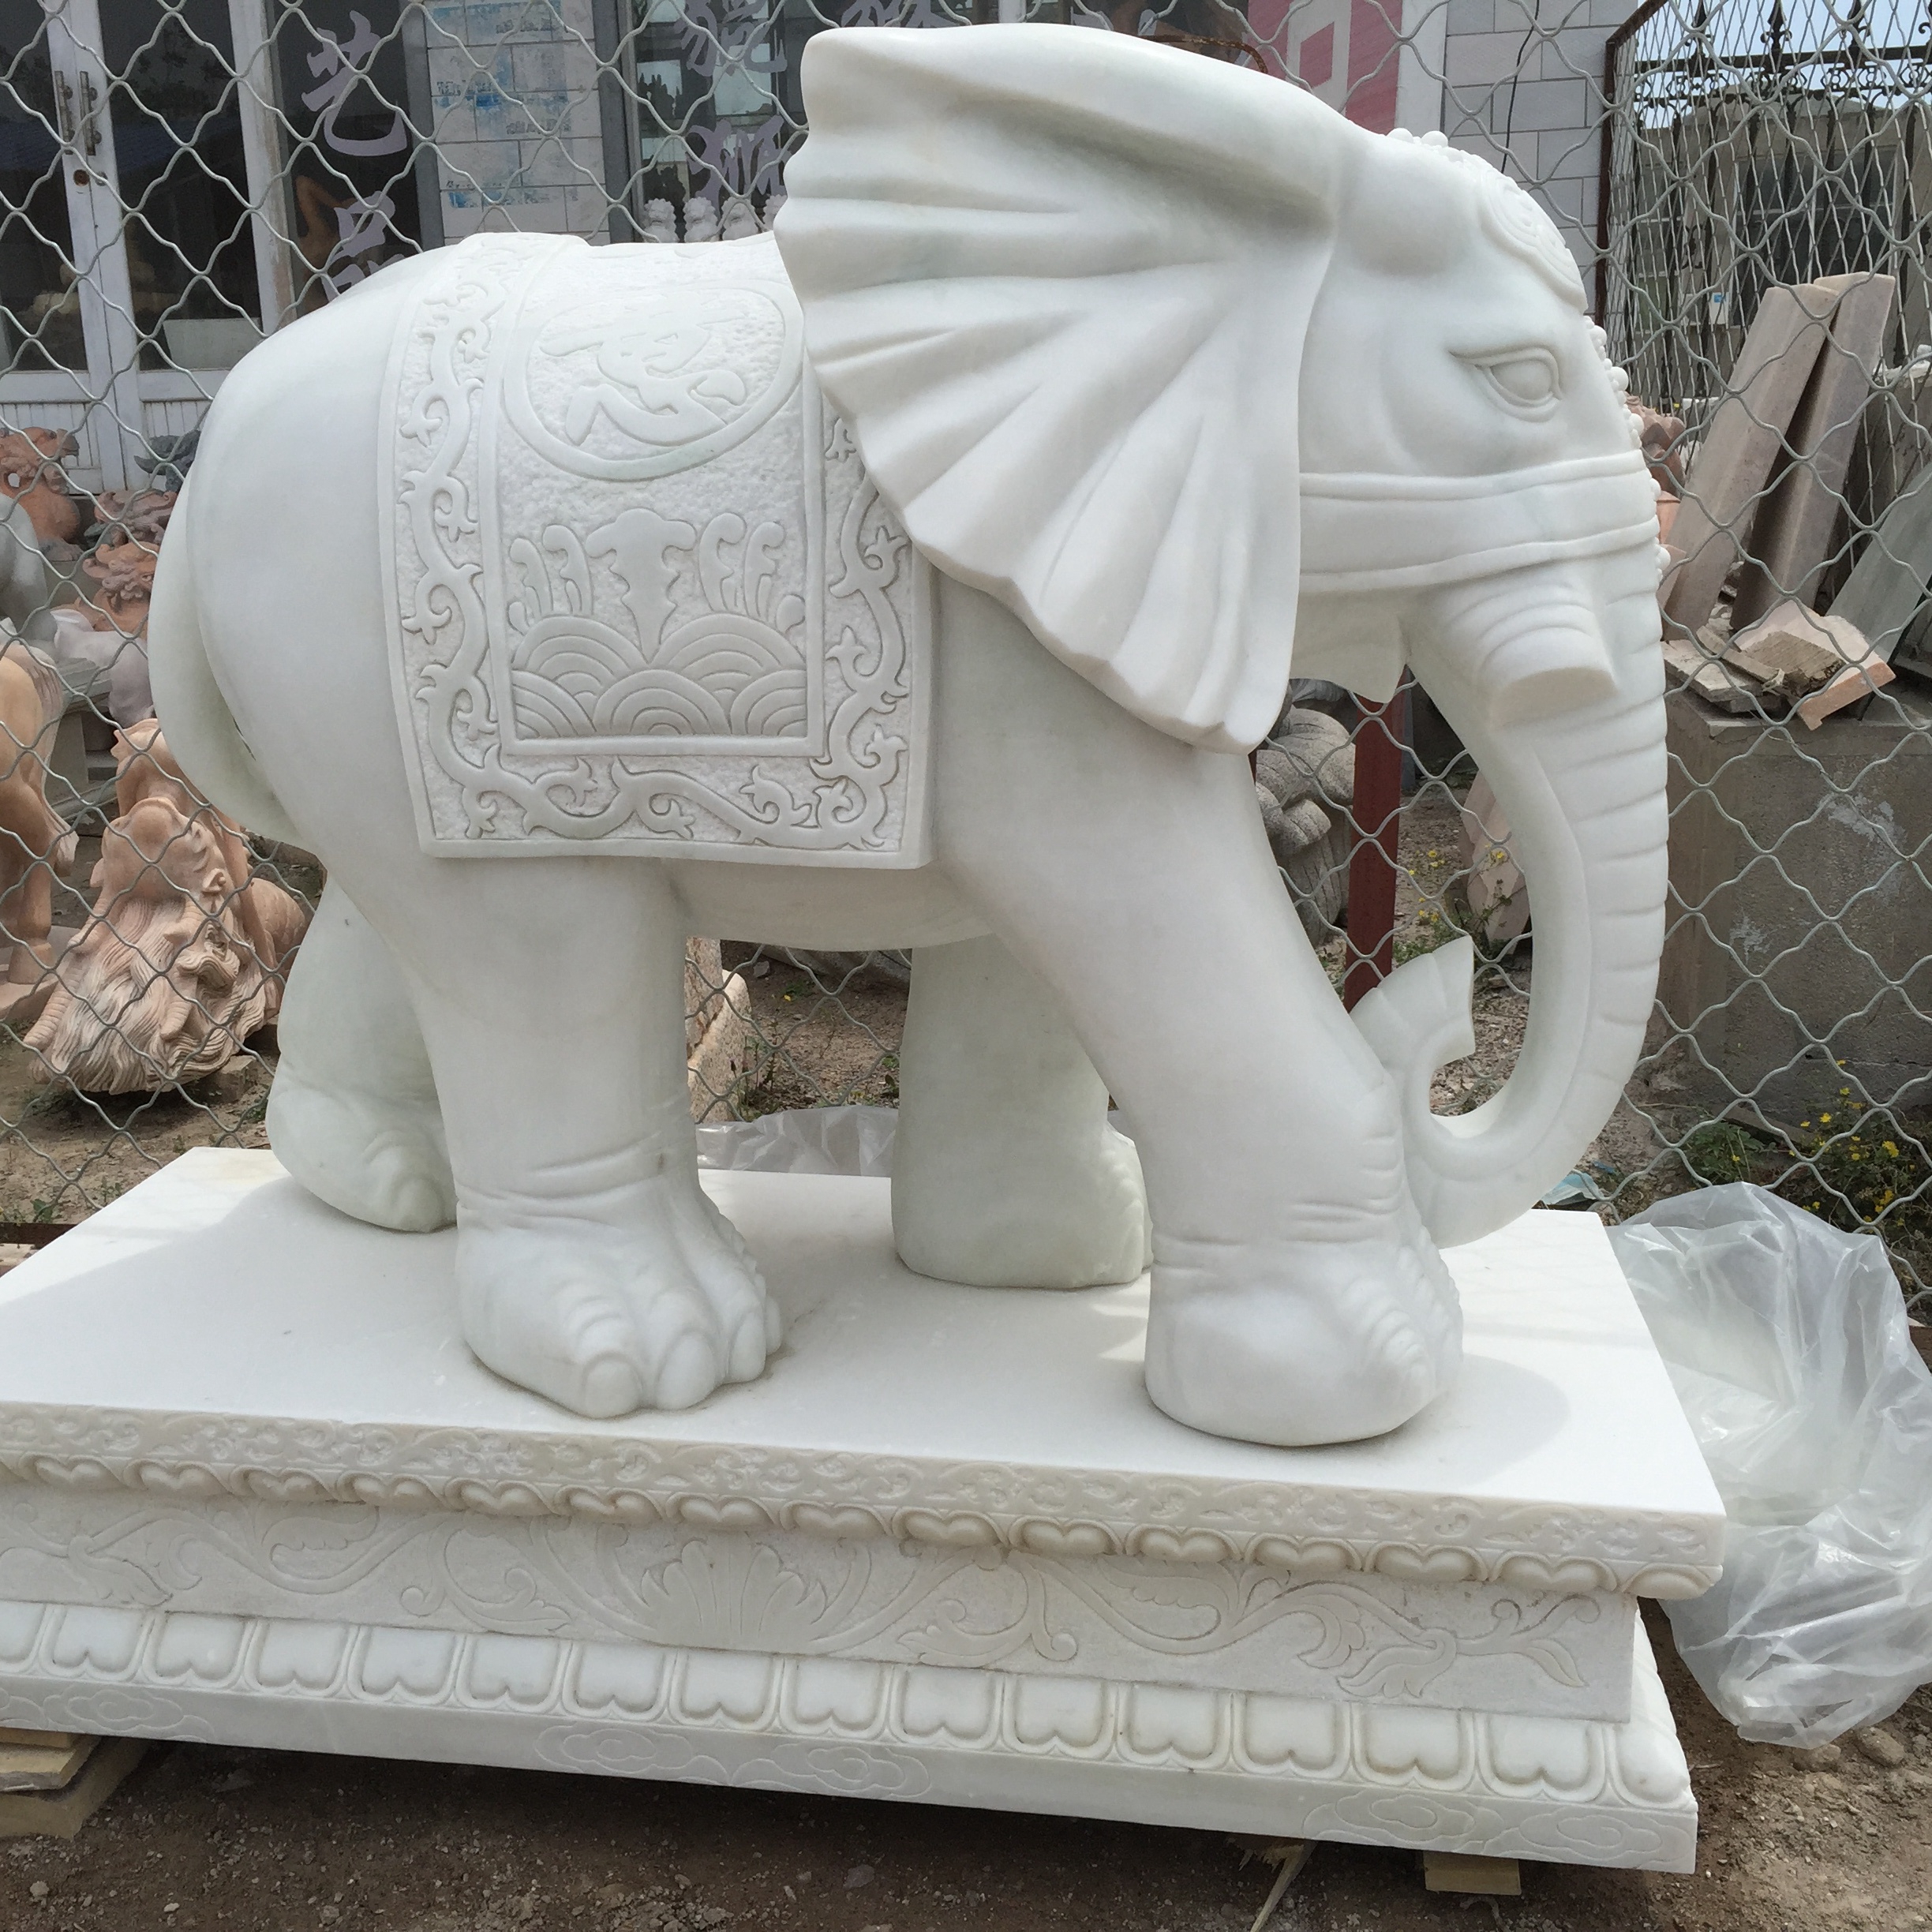 elephant statue bangkok